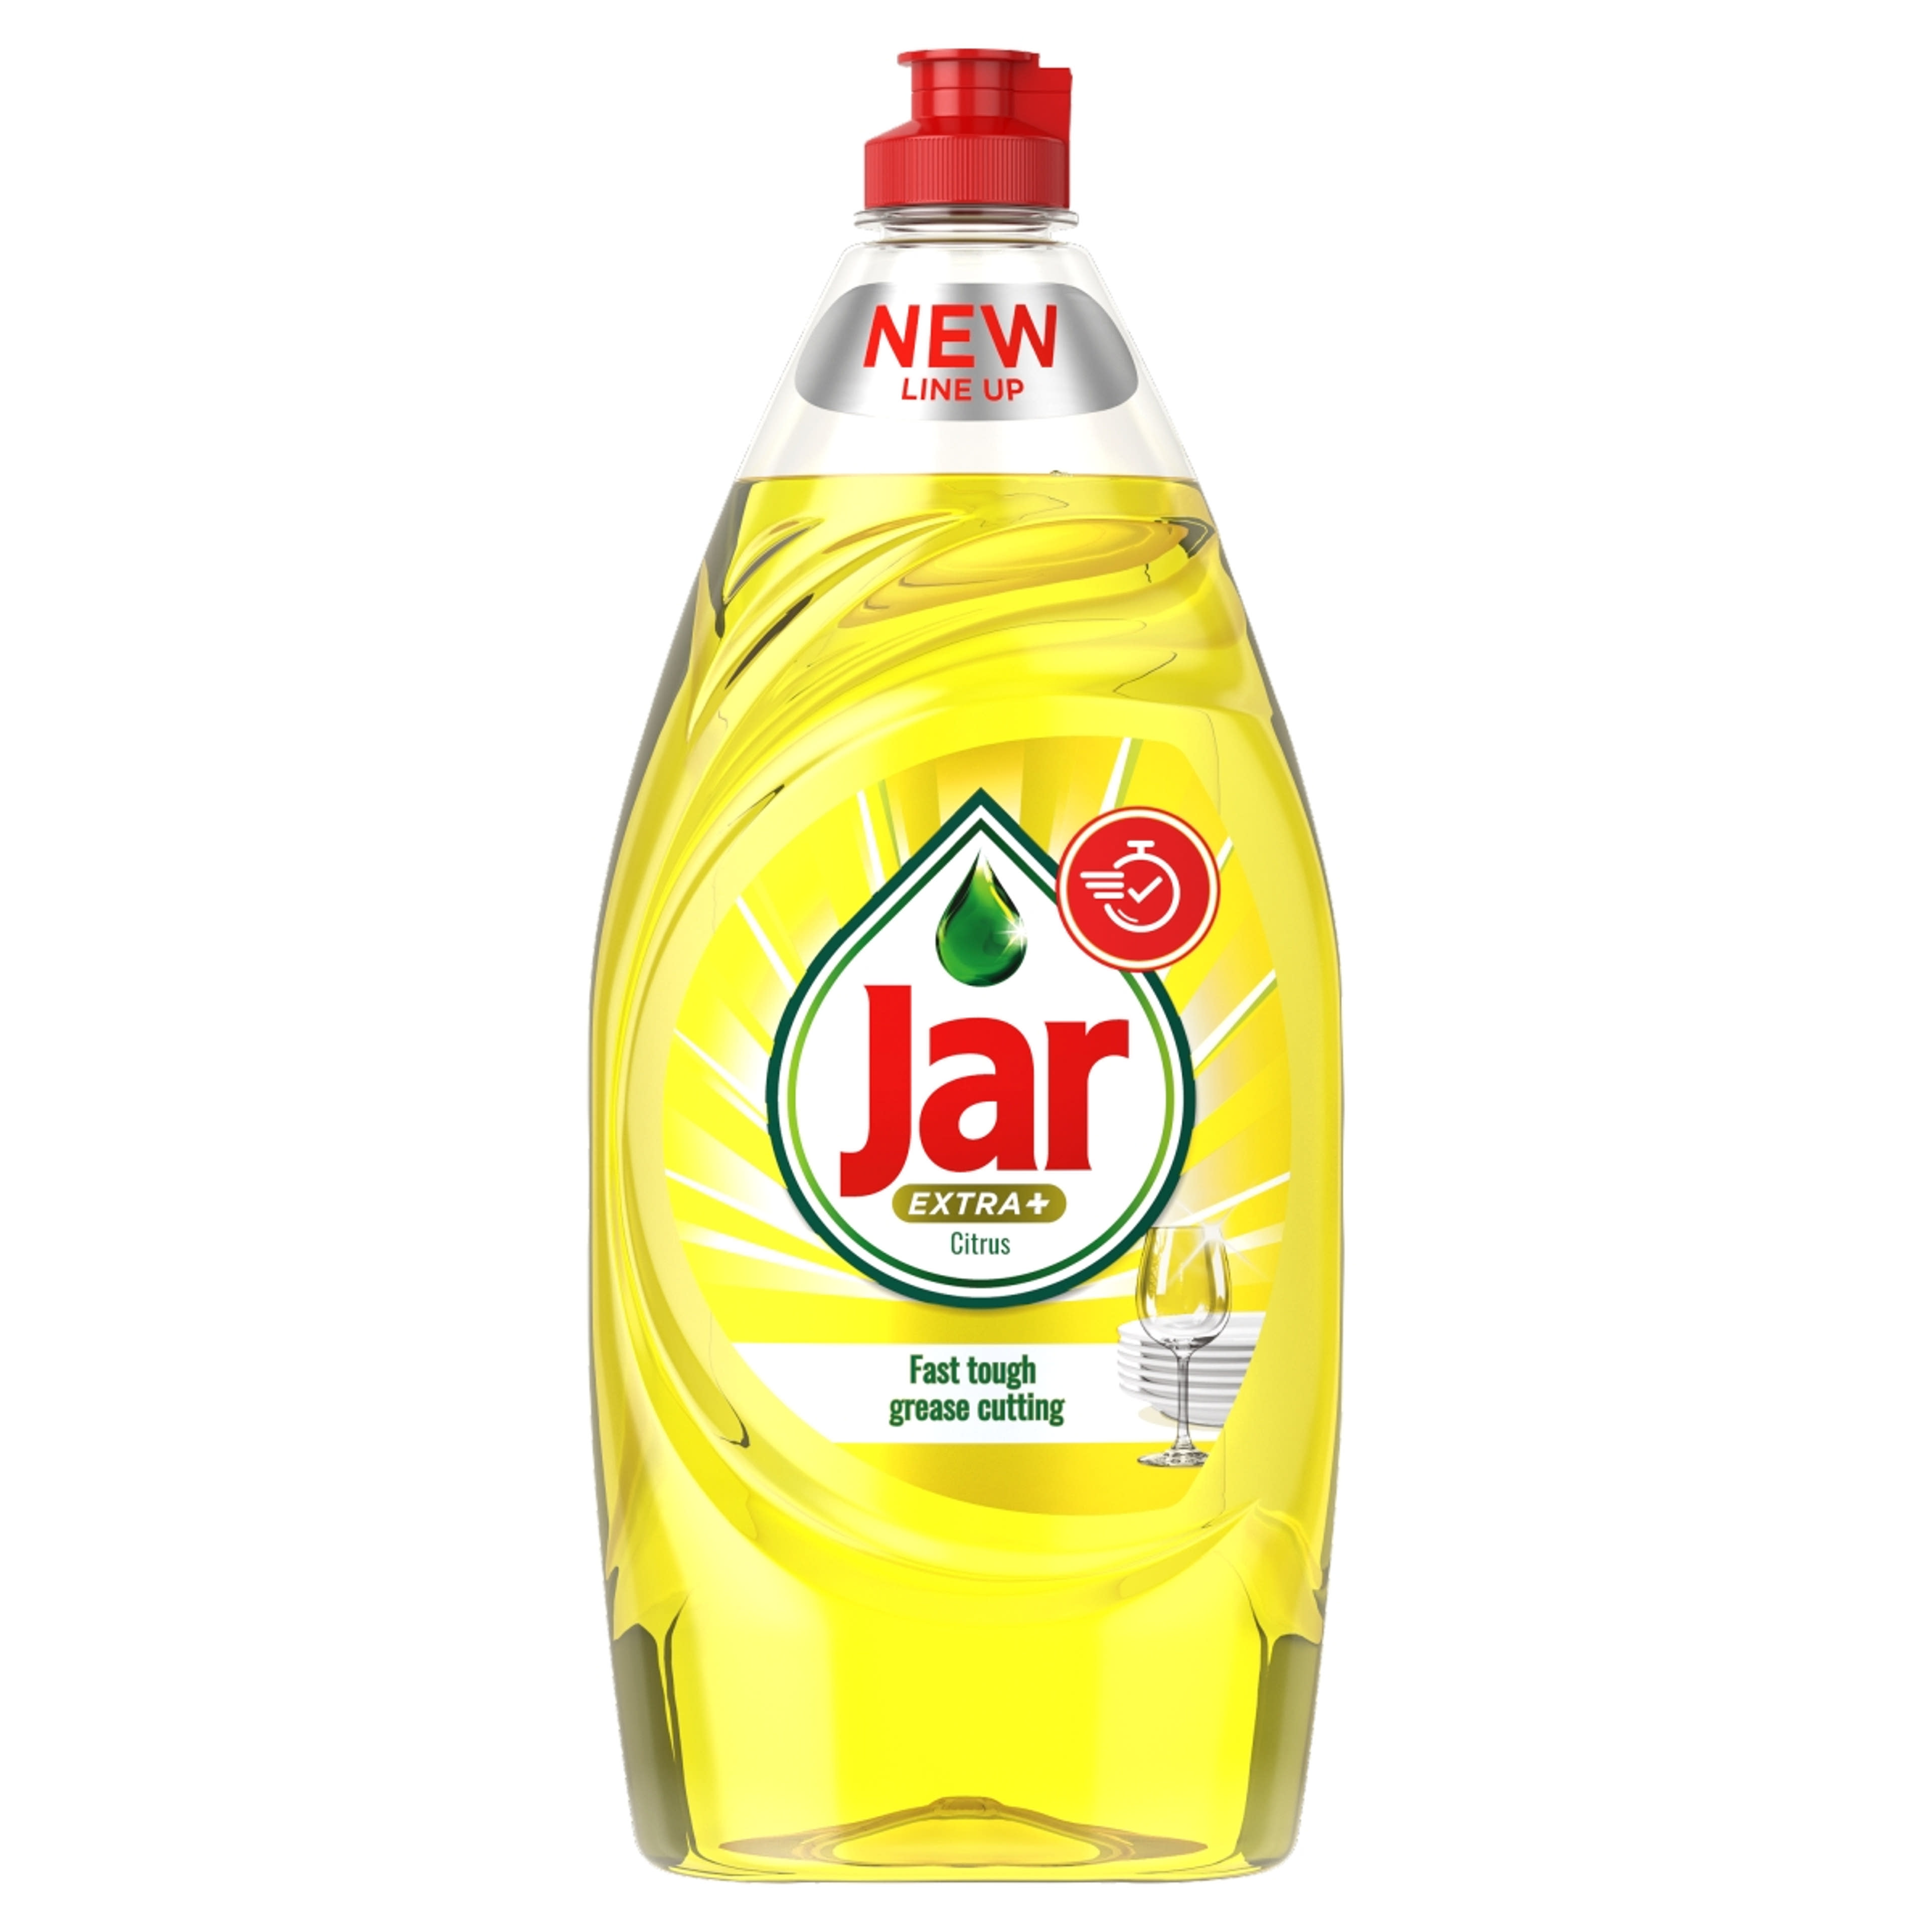 Jar Extra+ mosogatószer citrus illattal - 905ml